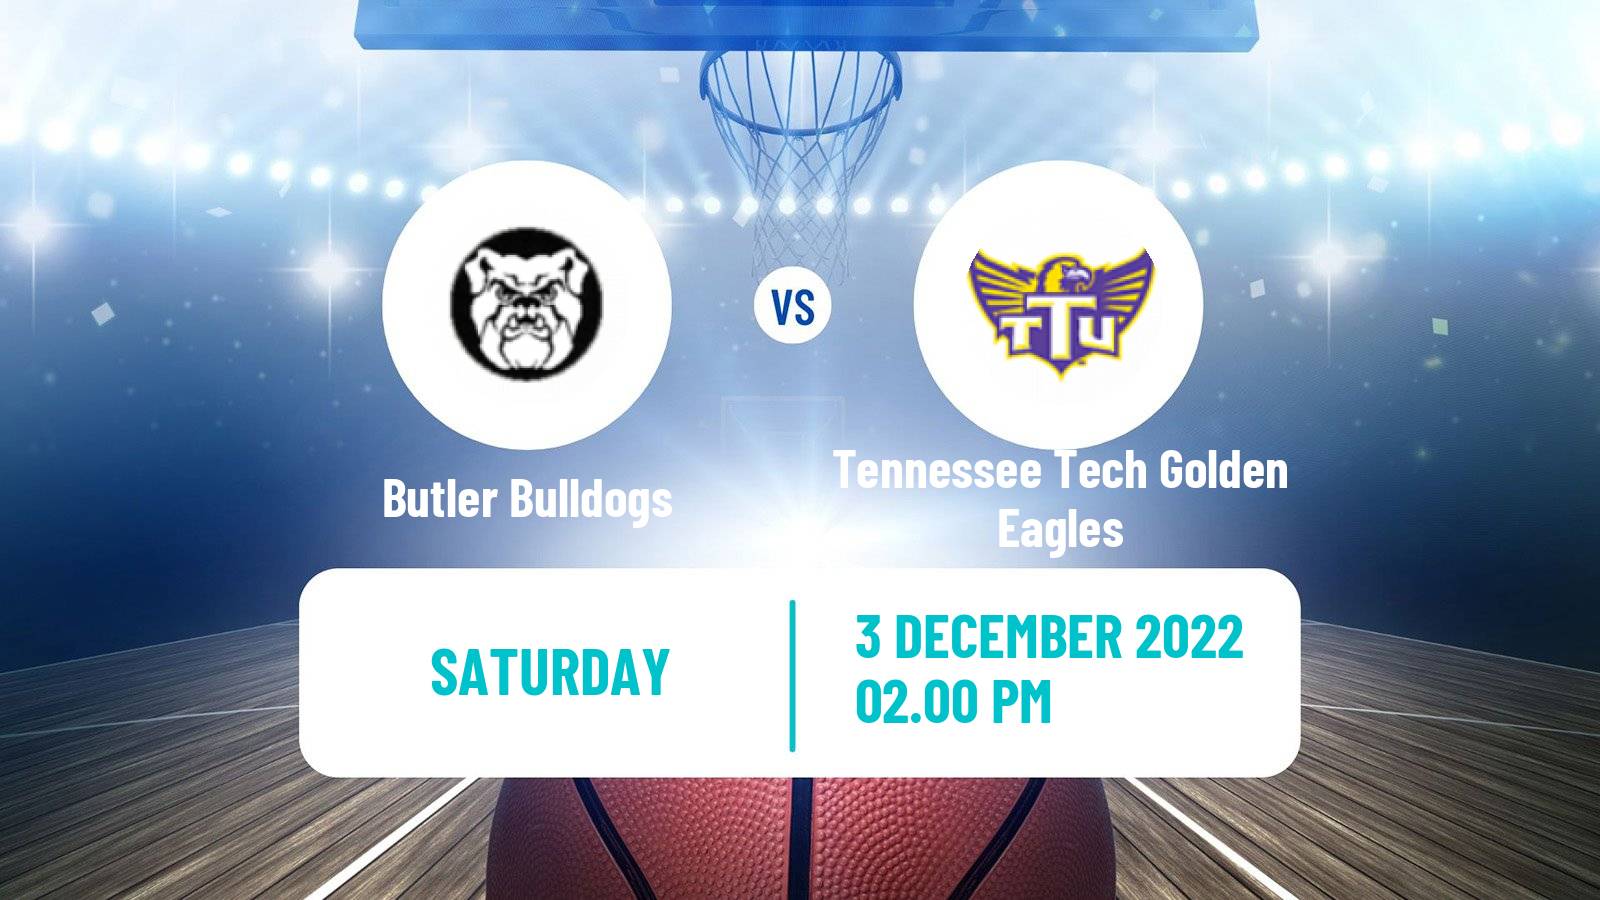 Basketball NCAA College Basketball Butler Bulldogs - Tennessee Tech Golden Eagles